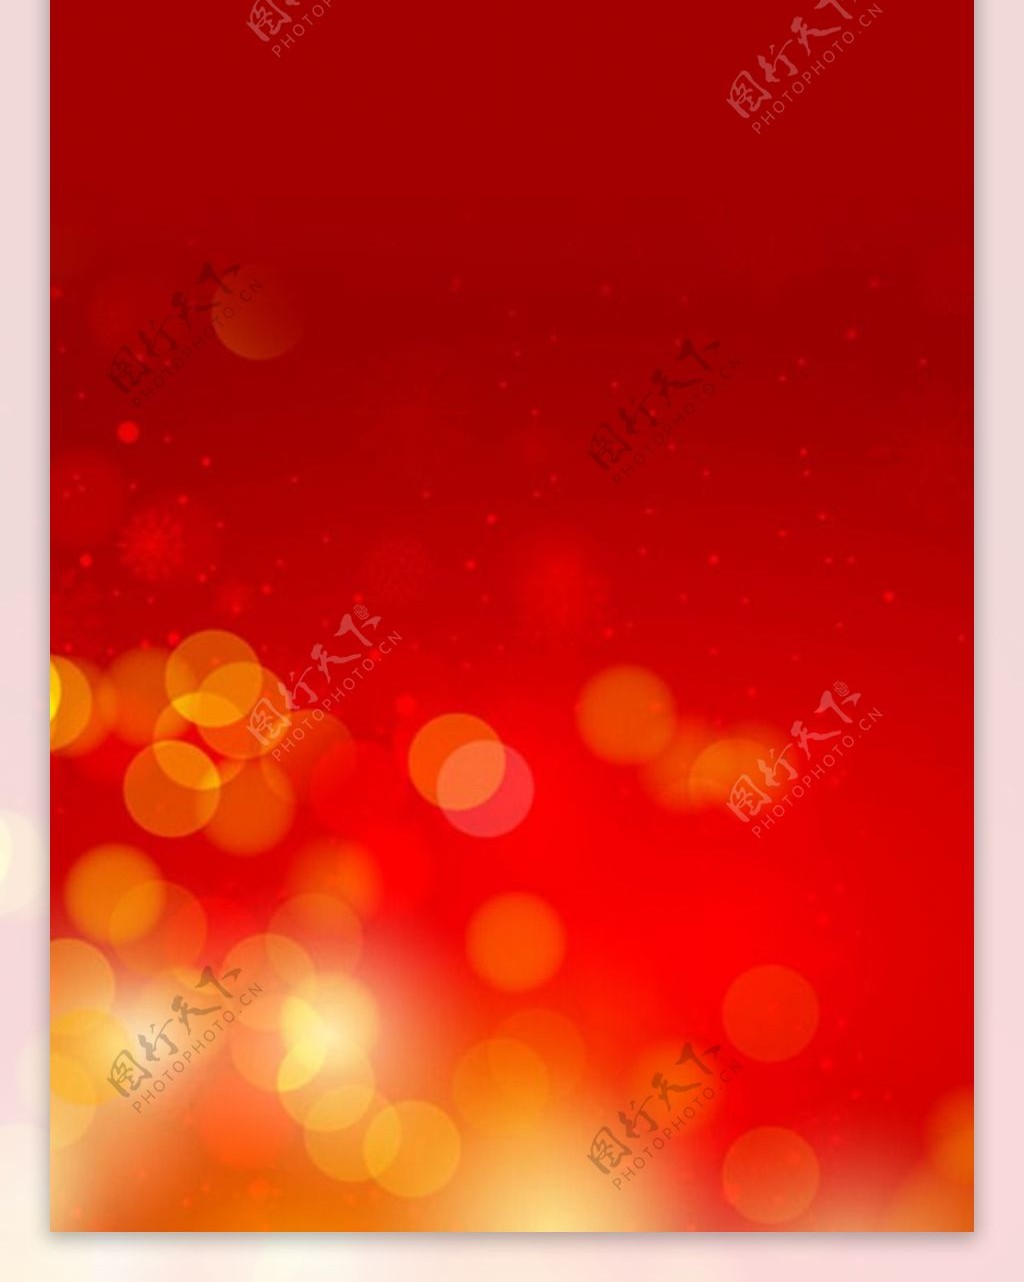 精美炫彩红色背景展架模板设计画面素材